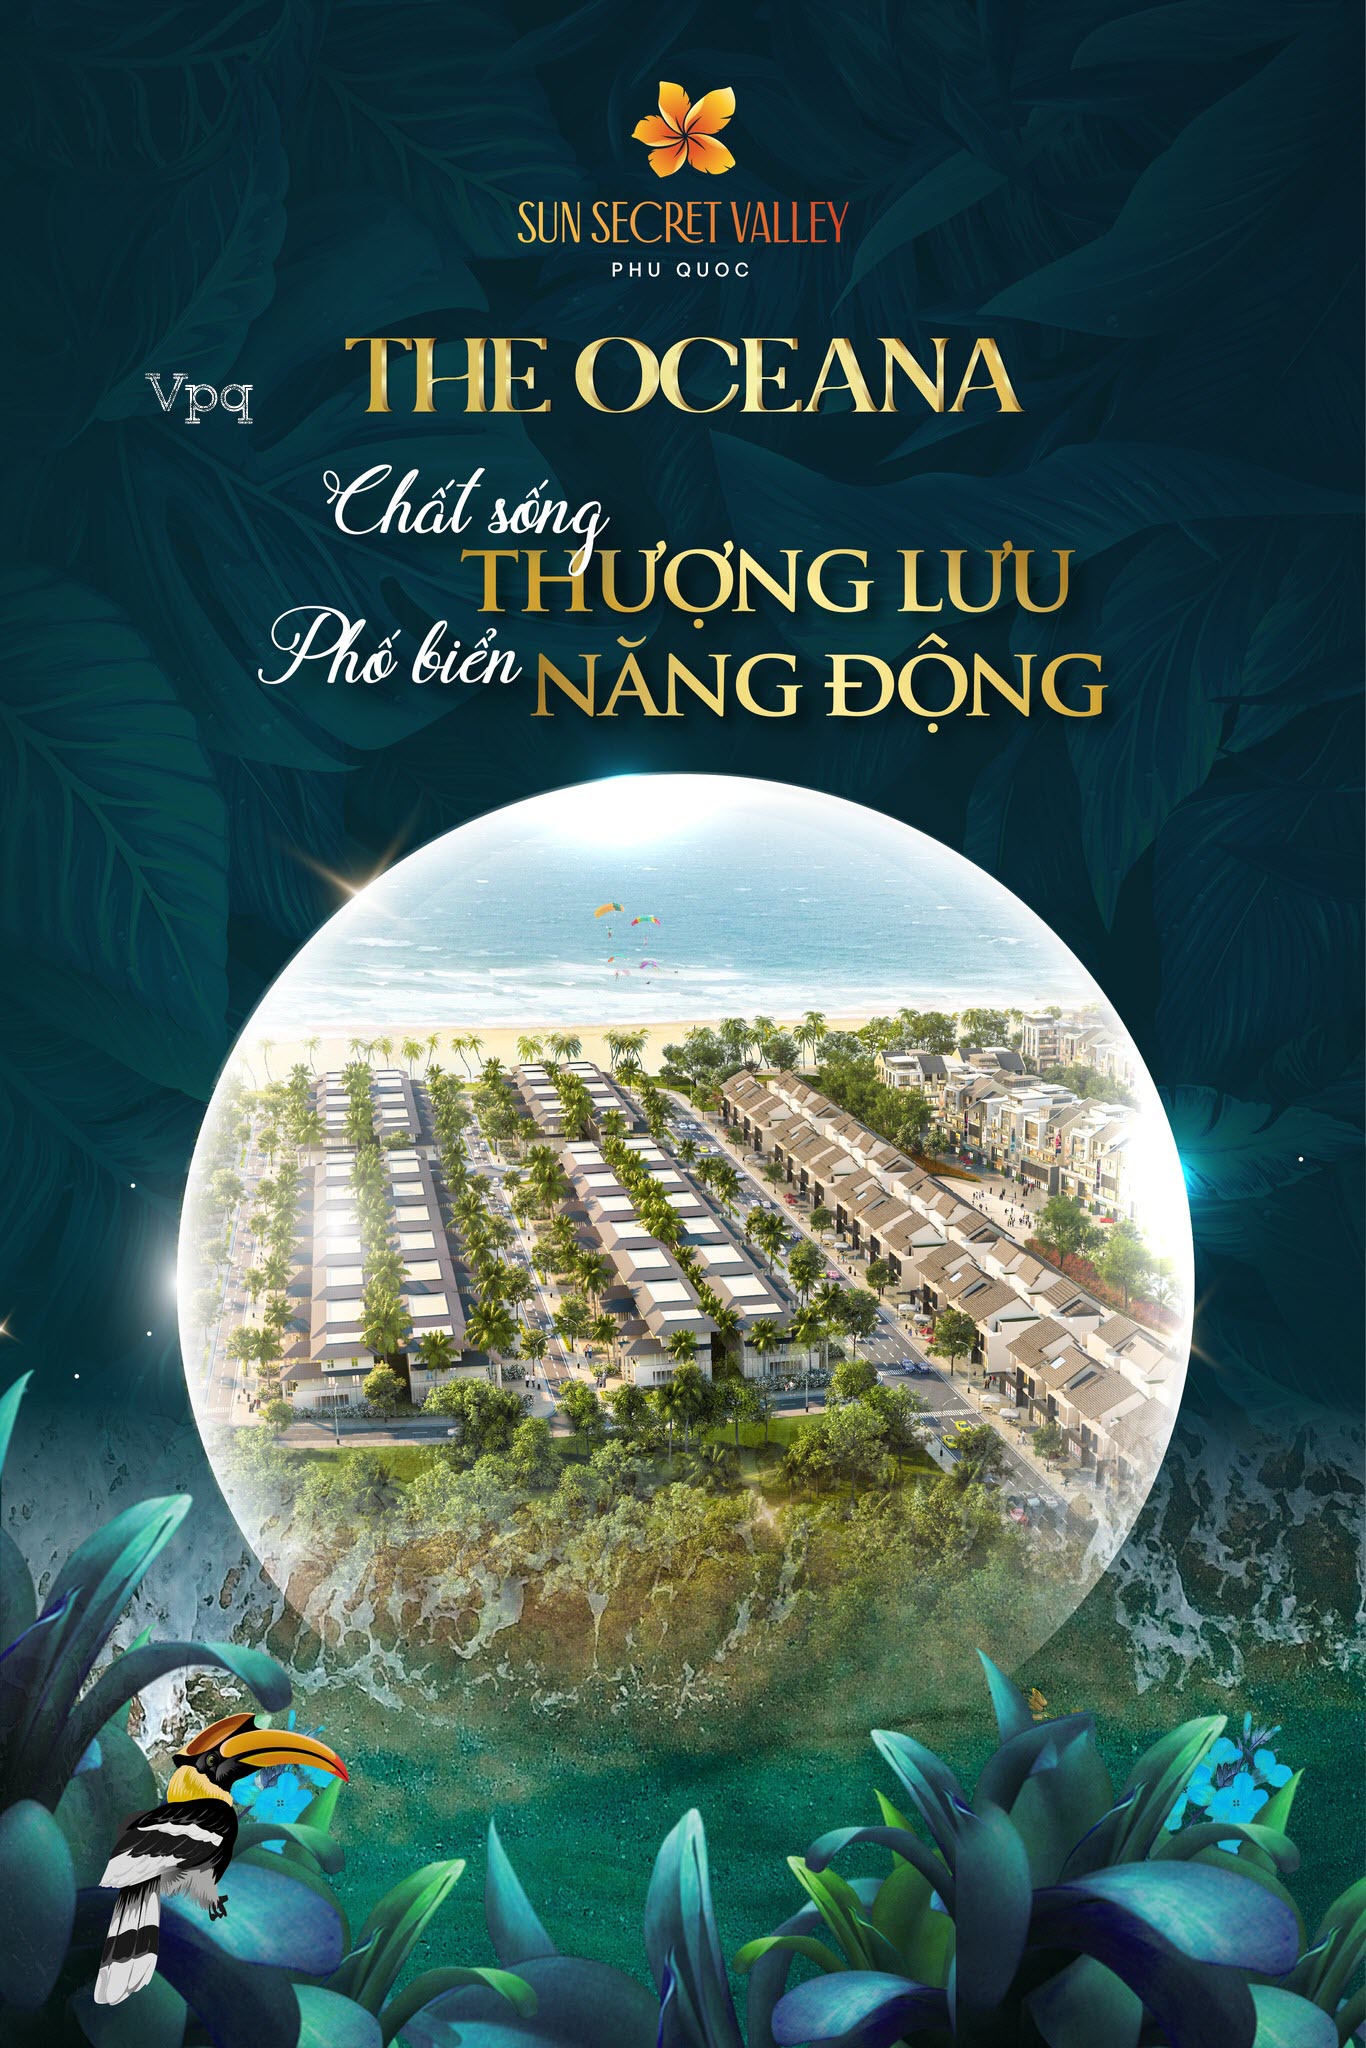 The Oceana: Chất sống thượng lưu, phố biển năng động